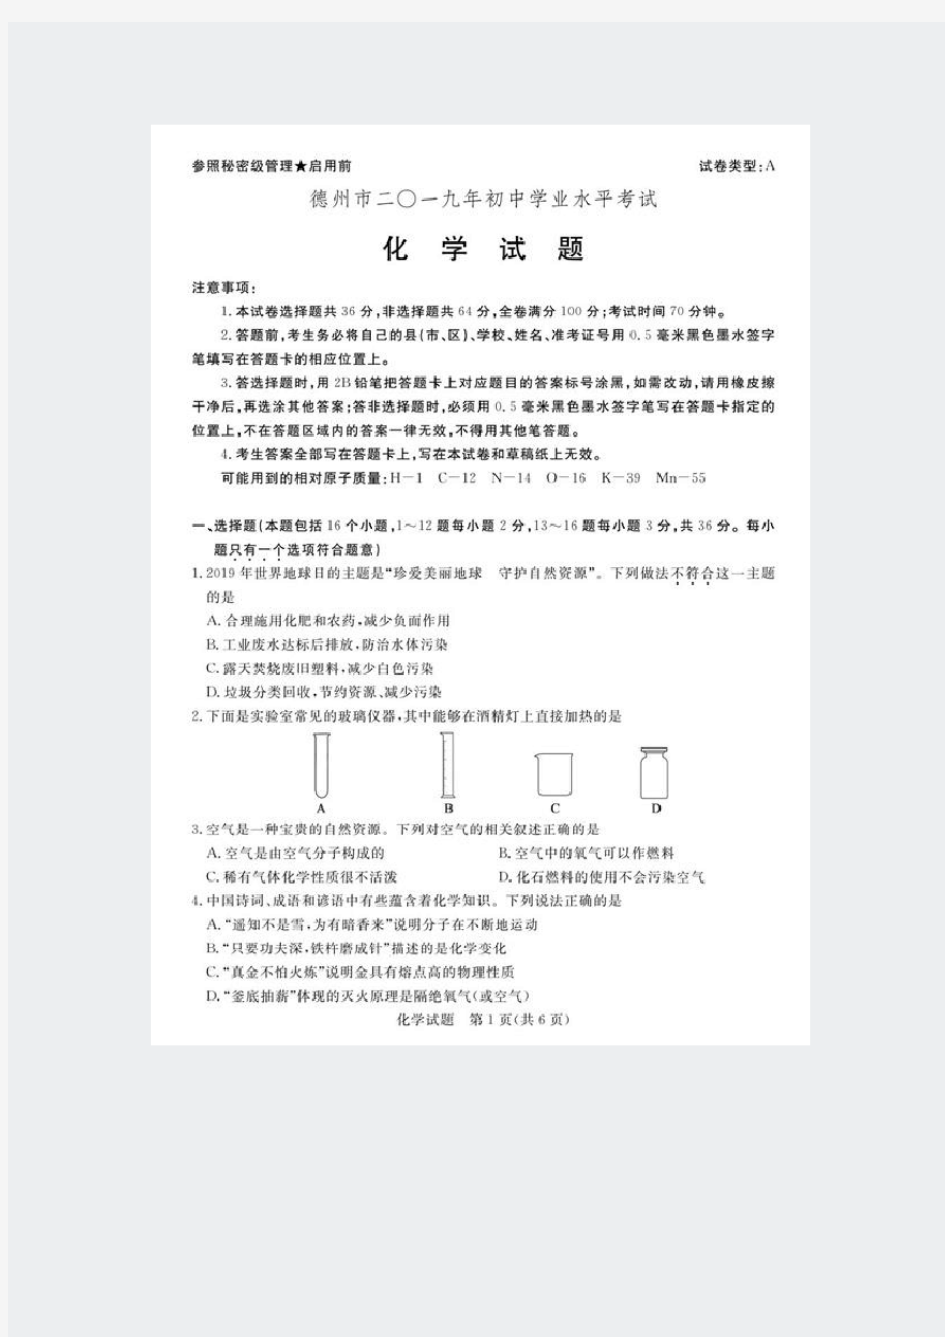 中考真题电子版-化学山东各省市-2019003